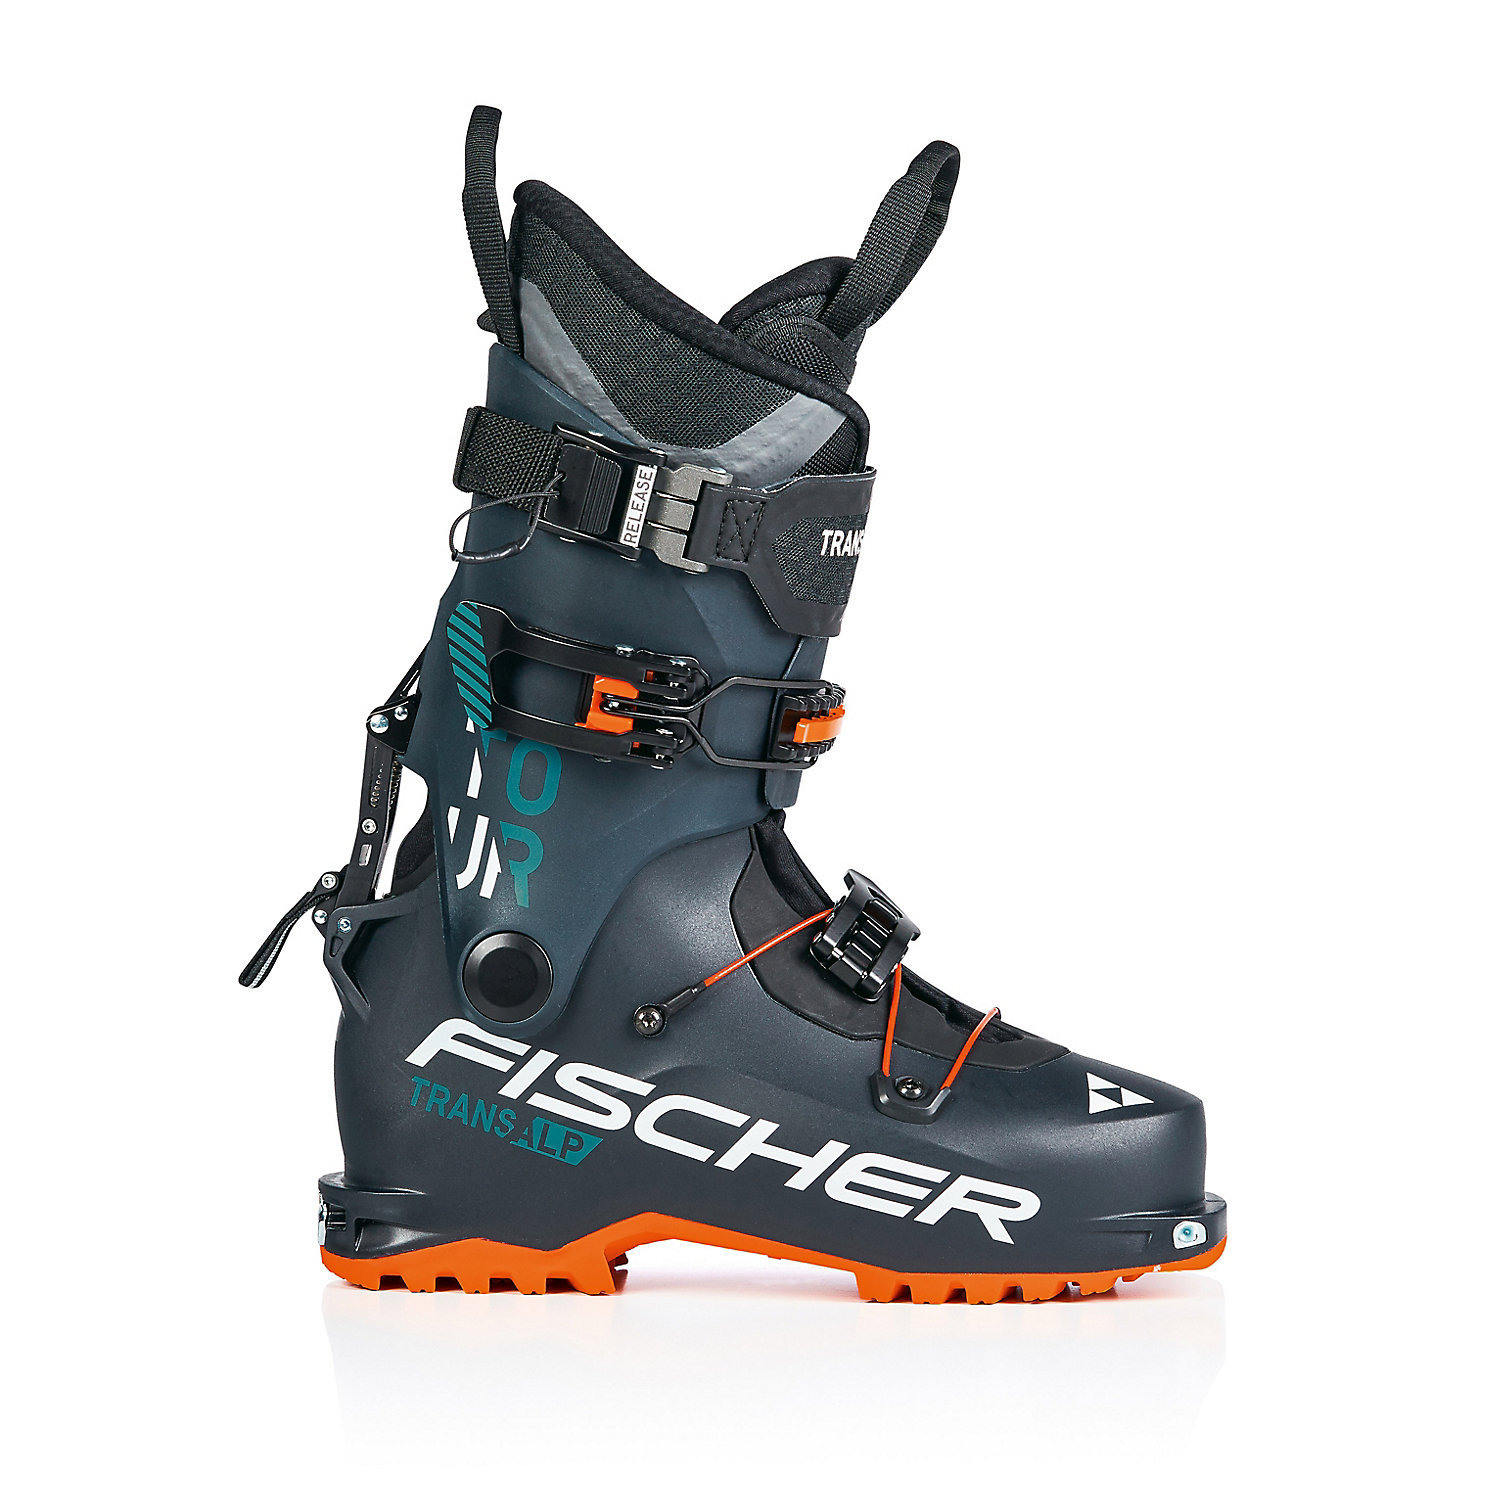 Fischer Mens Transalp Tour Ski Boot